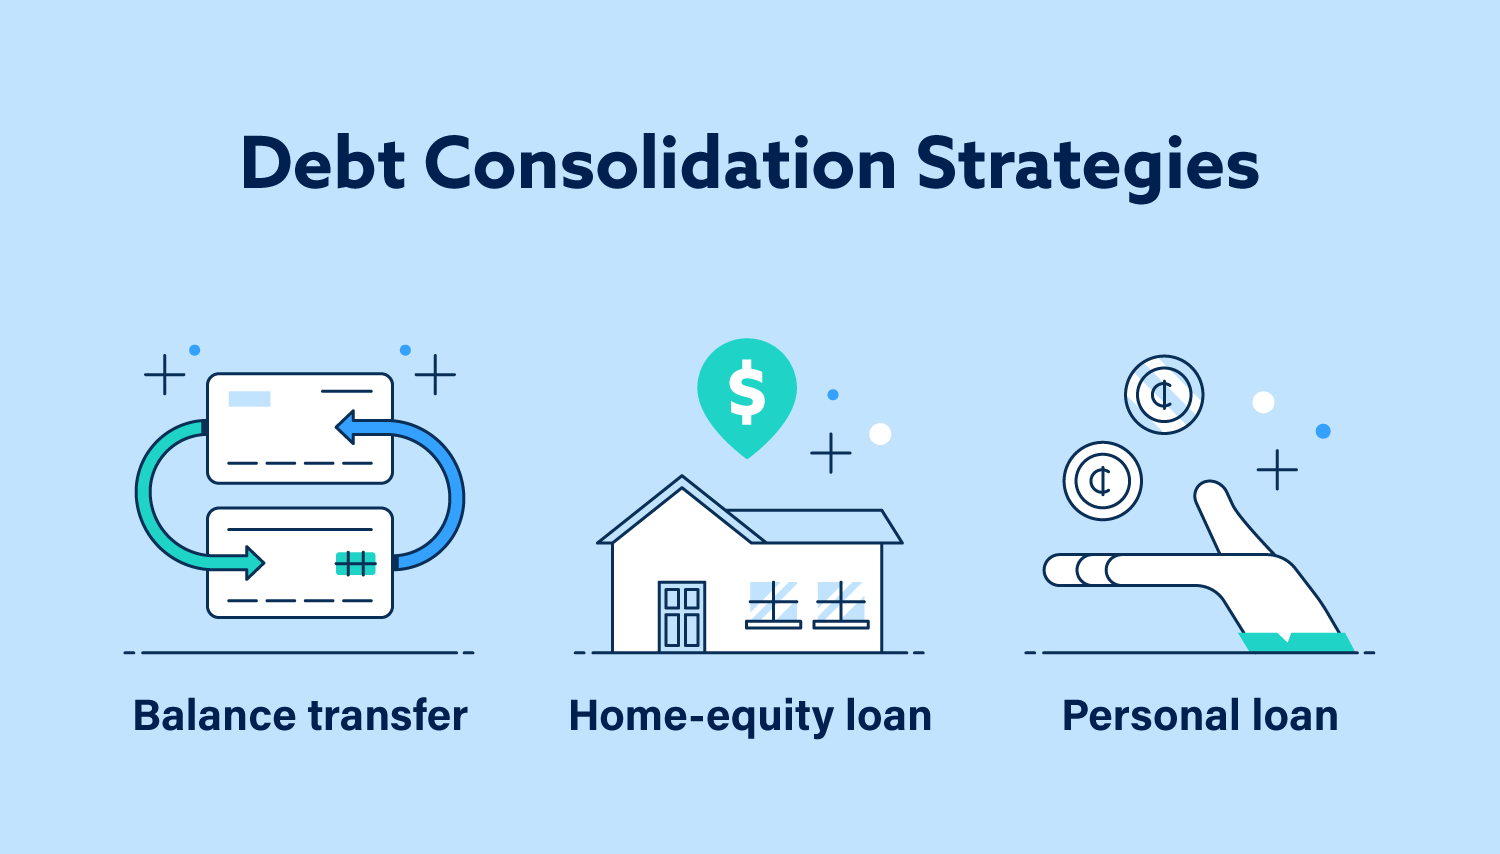 Las estrategias de consolidación de deuda incluyen hacer una transferencia de saldo, obtener un préstamo con garantía hipotecaria o un préstamo personal.